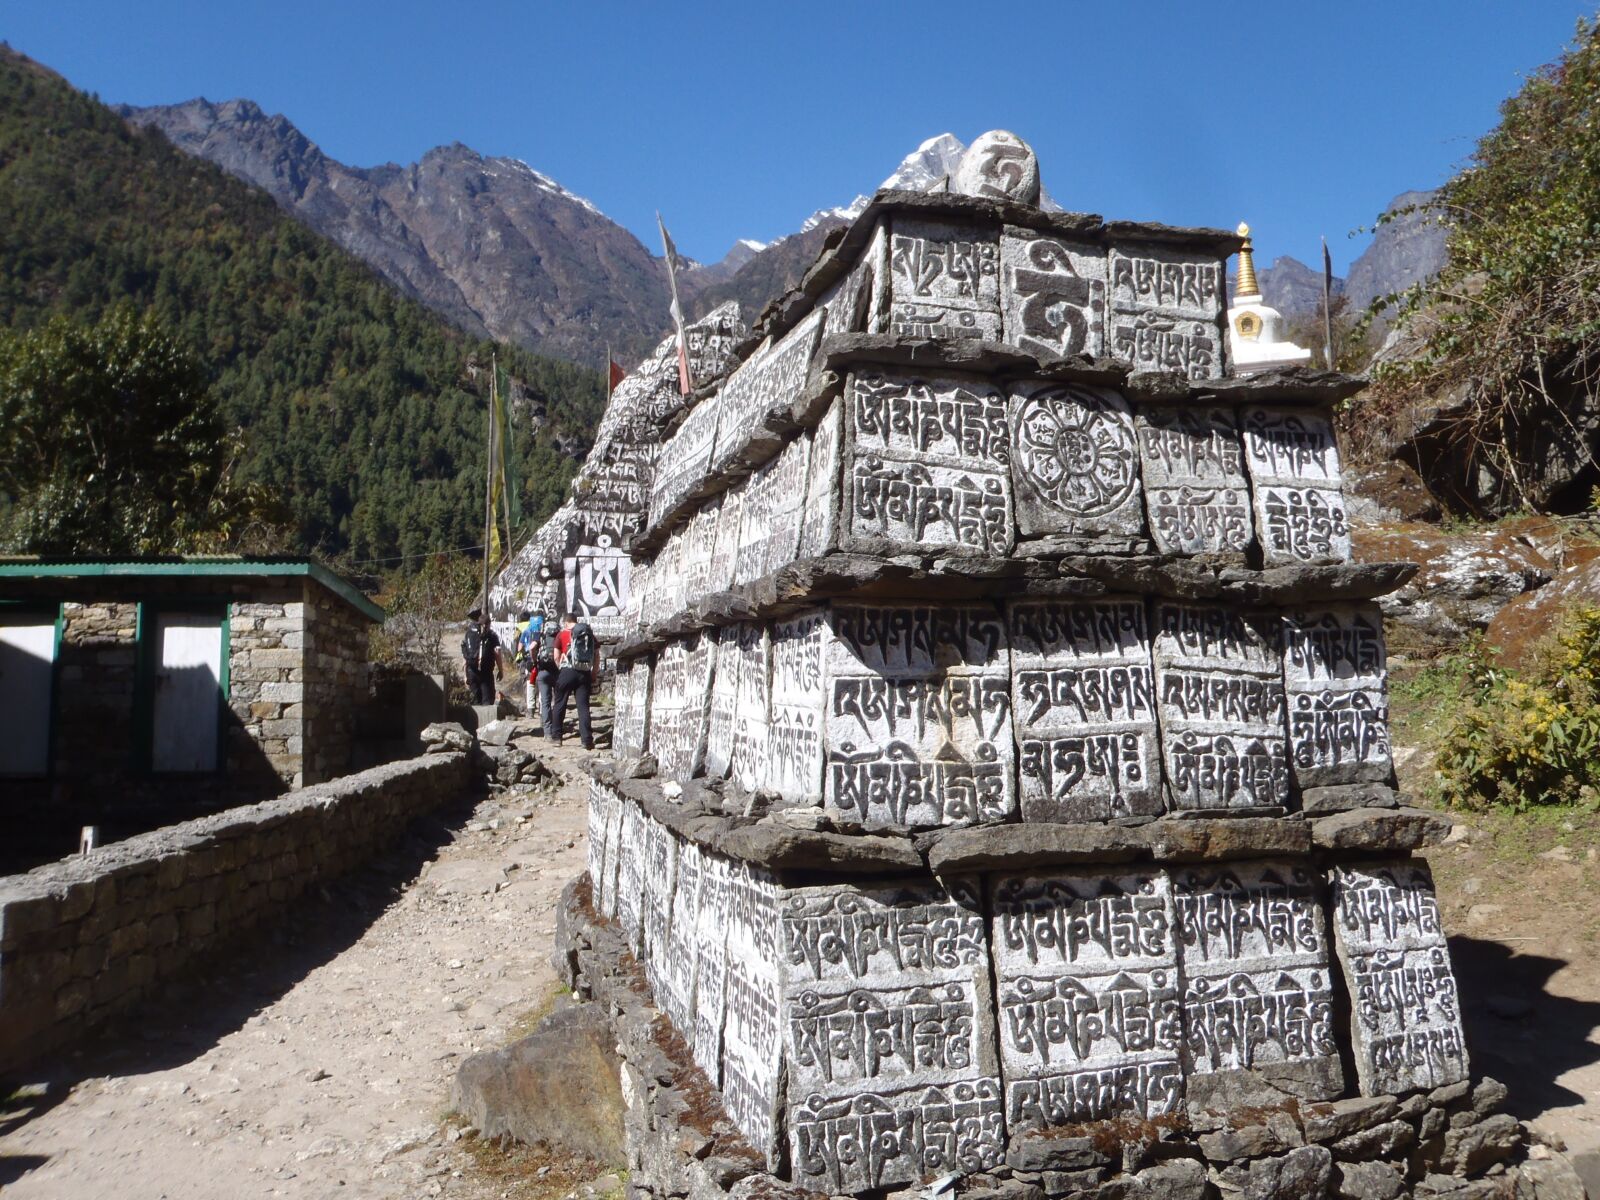 Olympus uTough-3000 sample photo. Mani stone, nepal, mountains photography